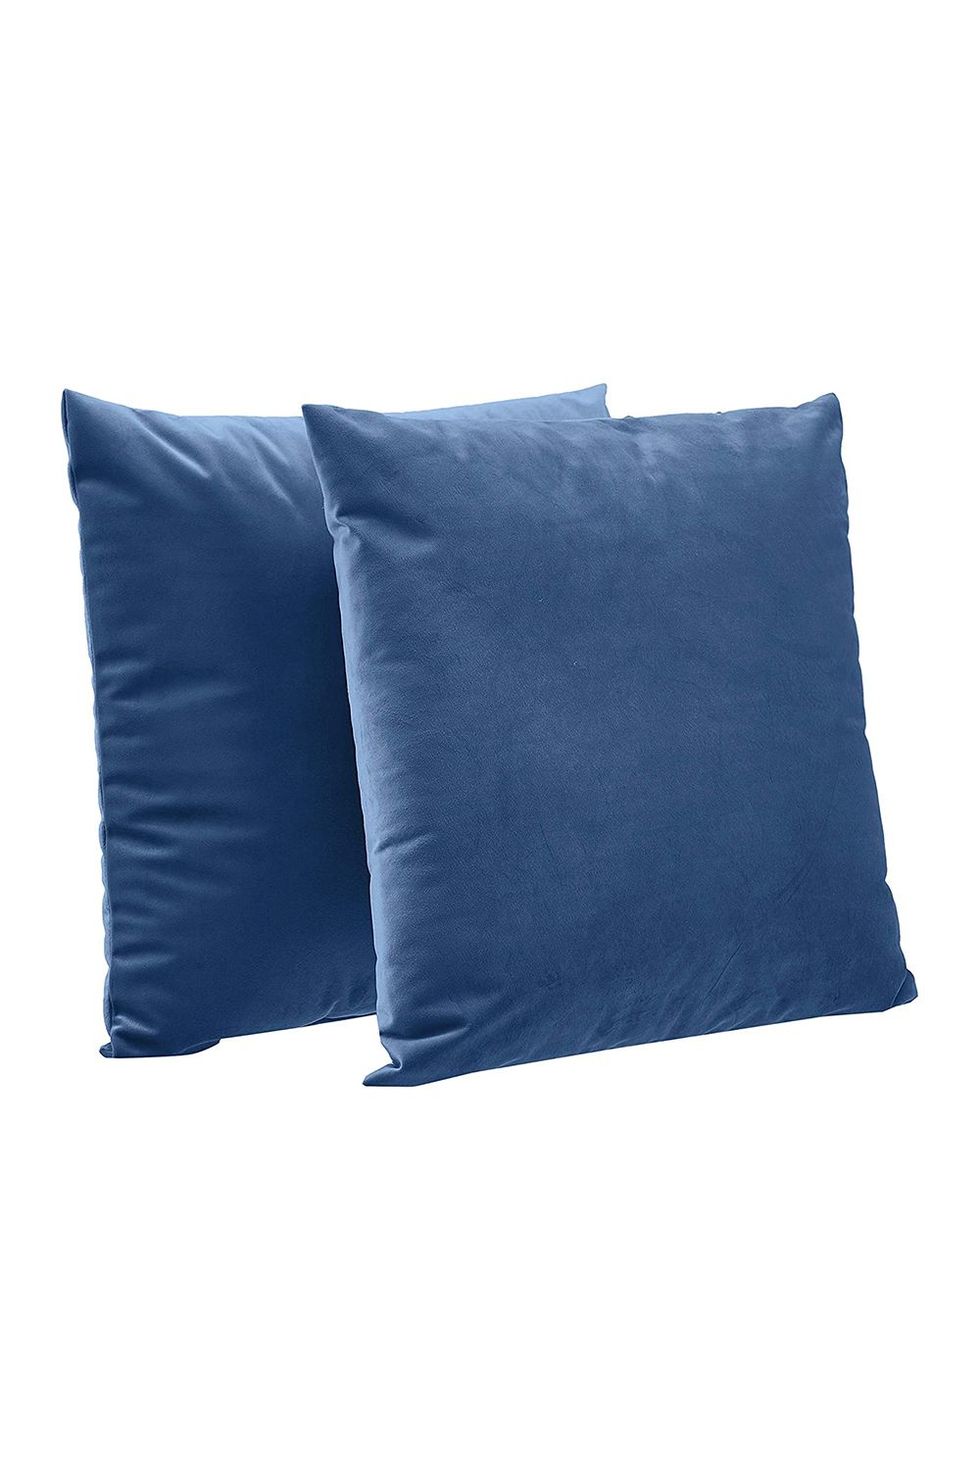 Velvet Throw Pillows 